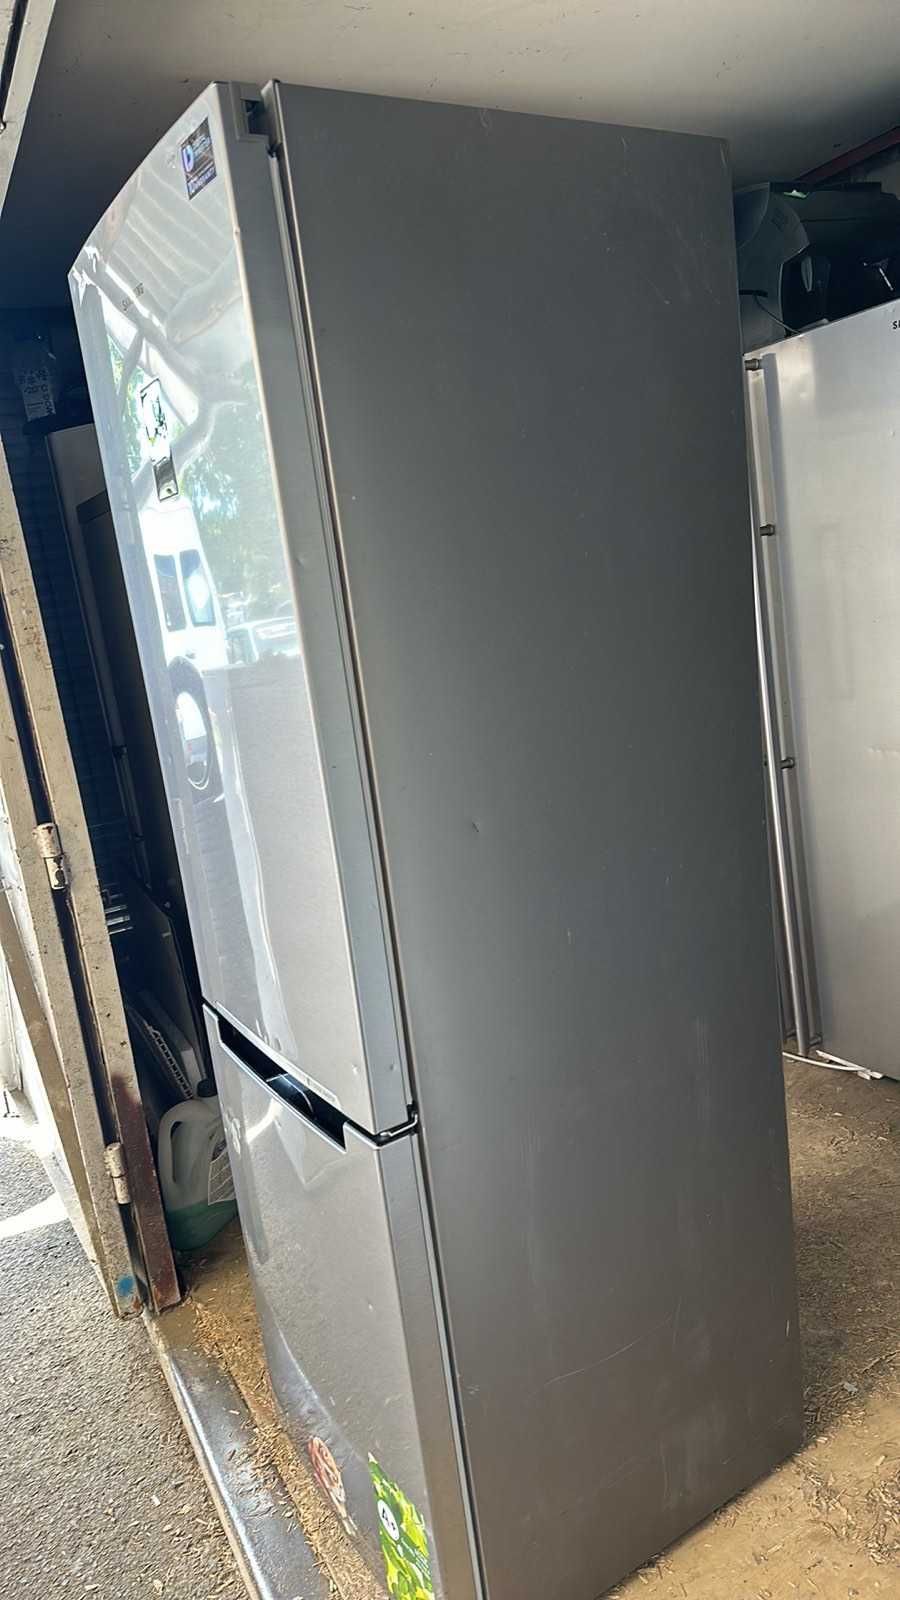 Холодильник б/у Samsung  (140510). Привезен из Европы